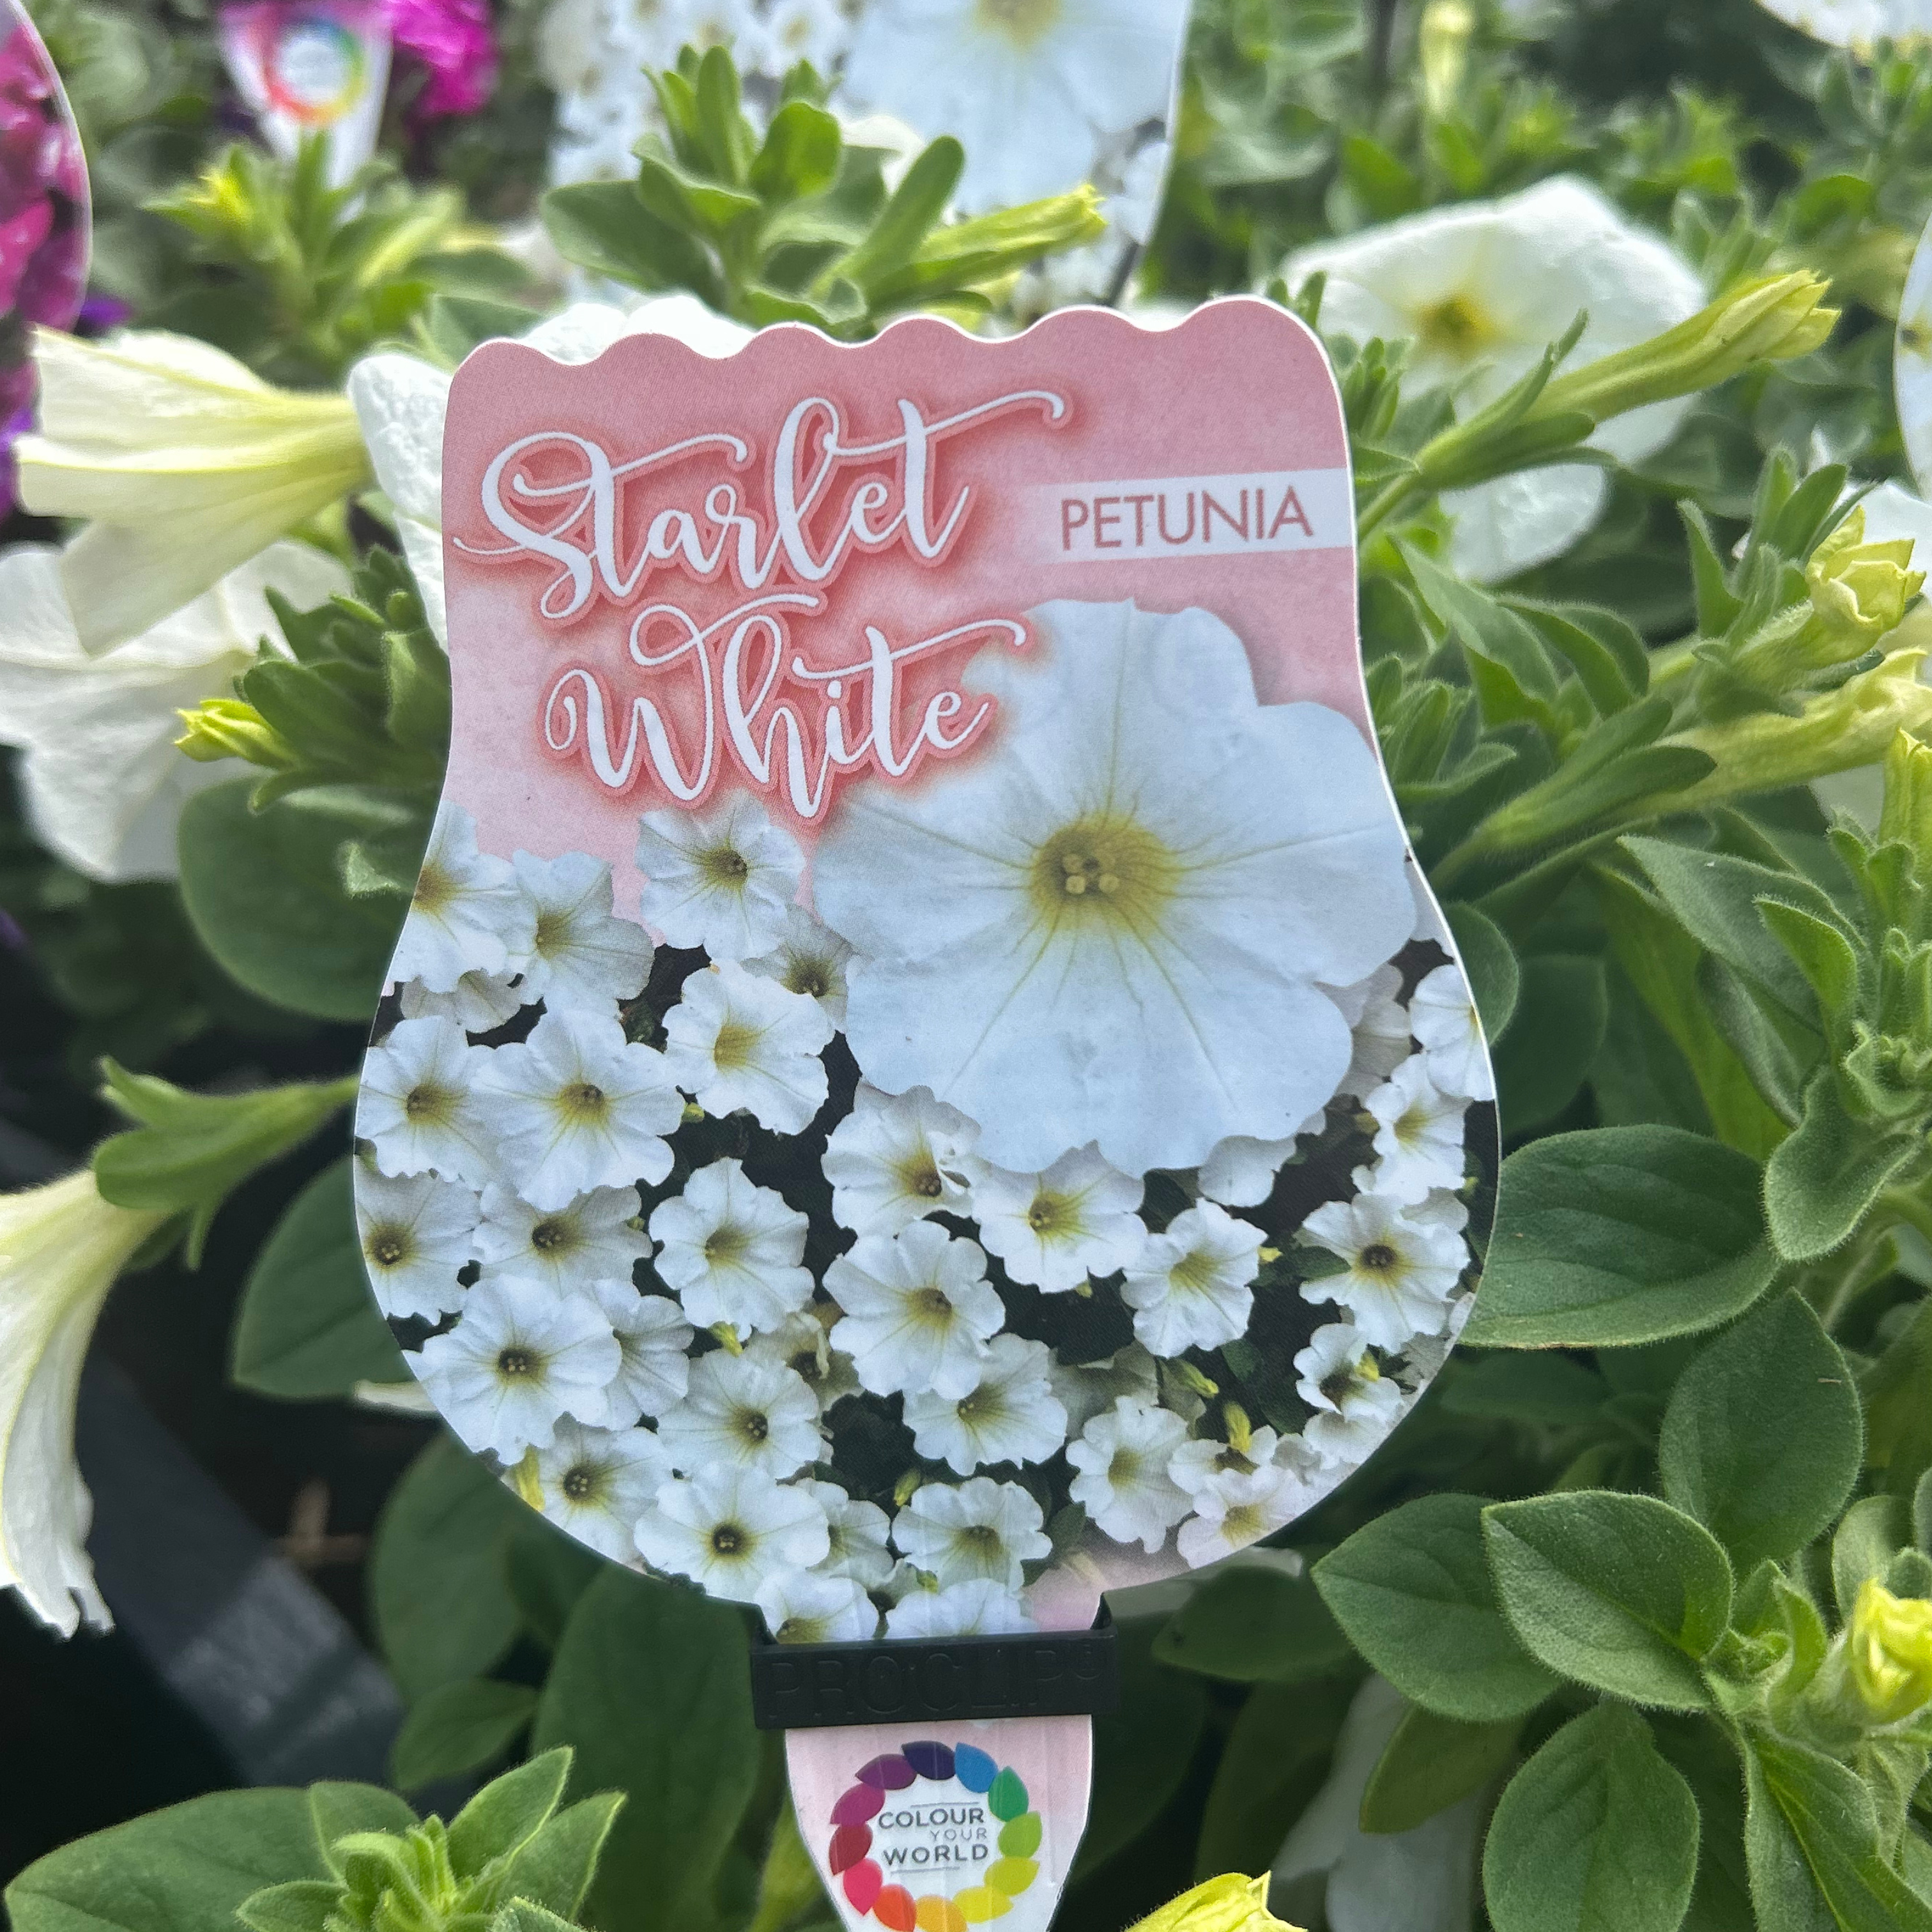 Petunia Starlet White